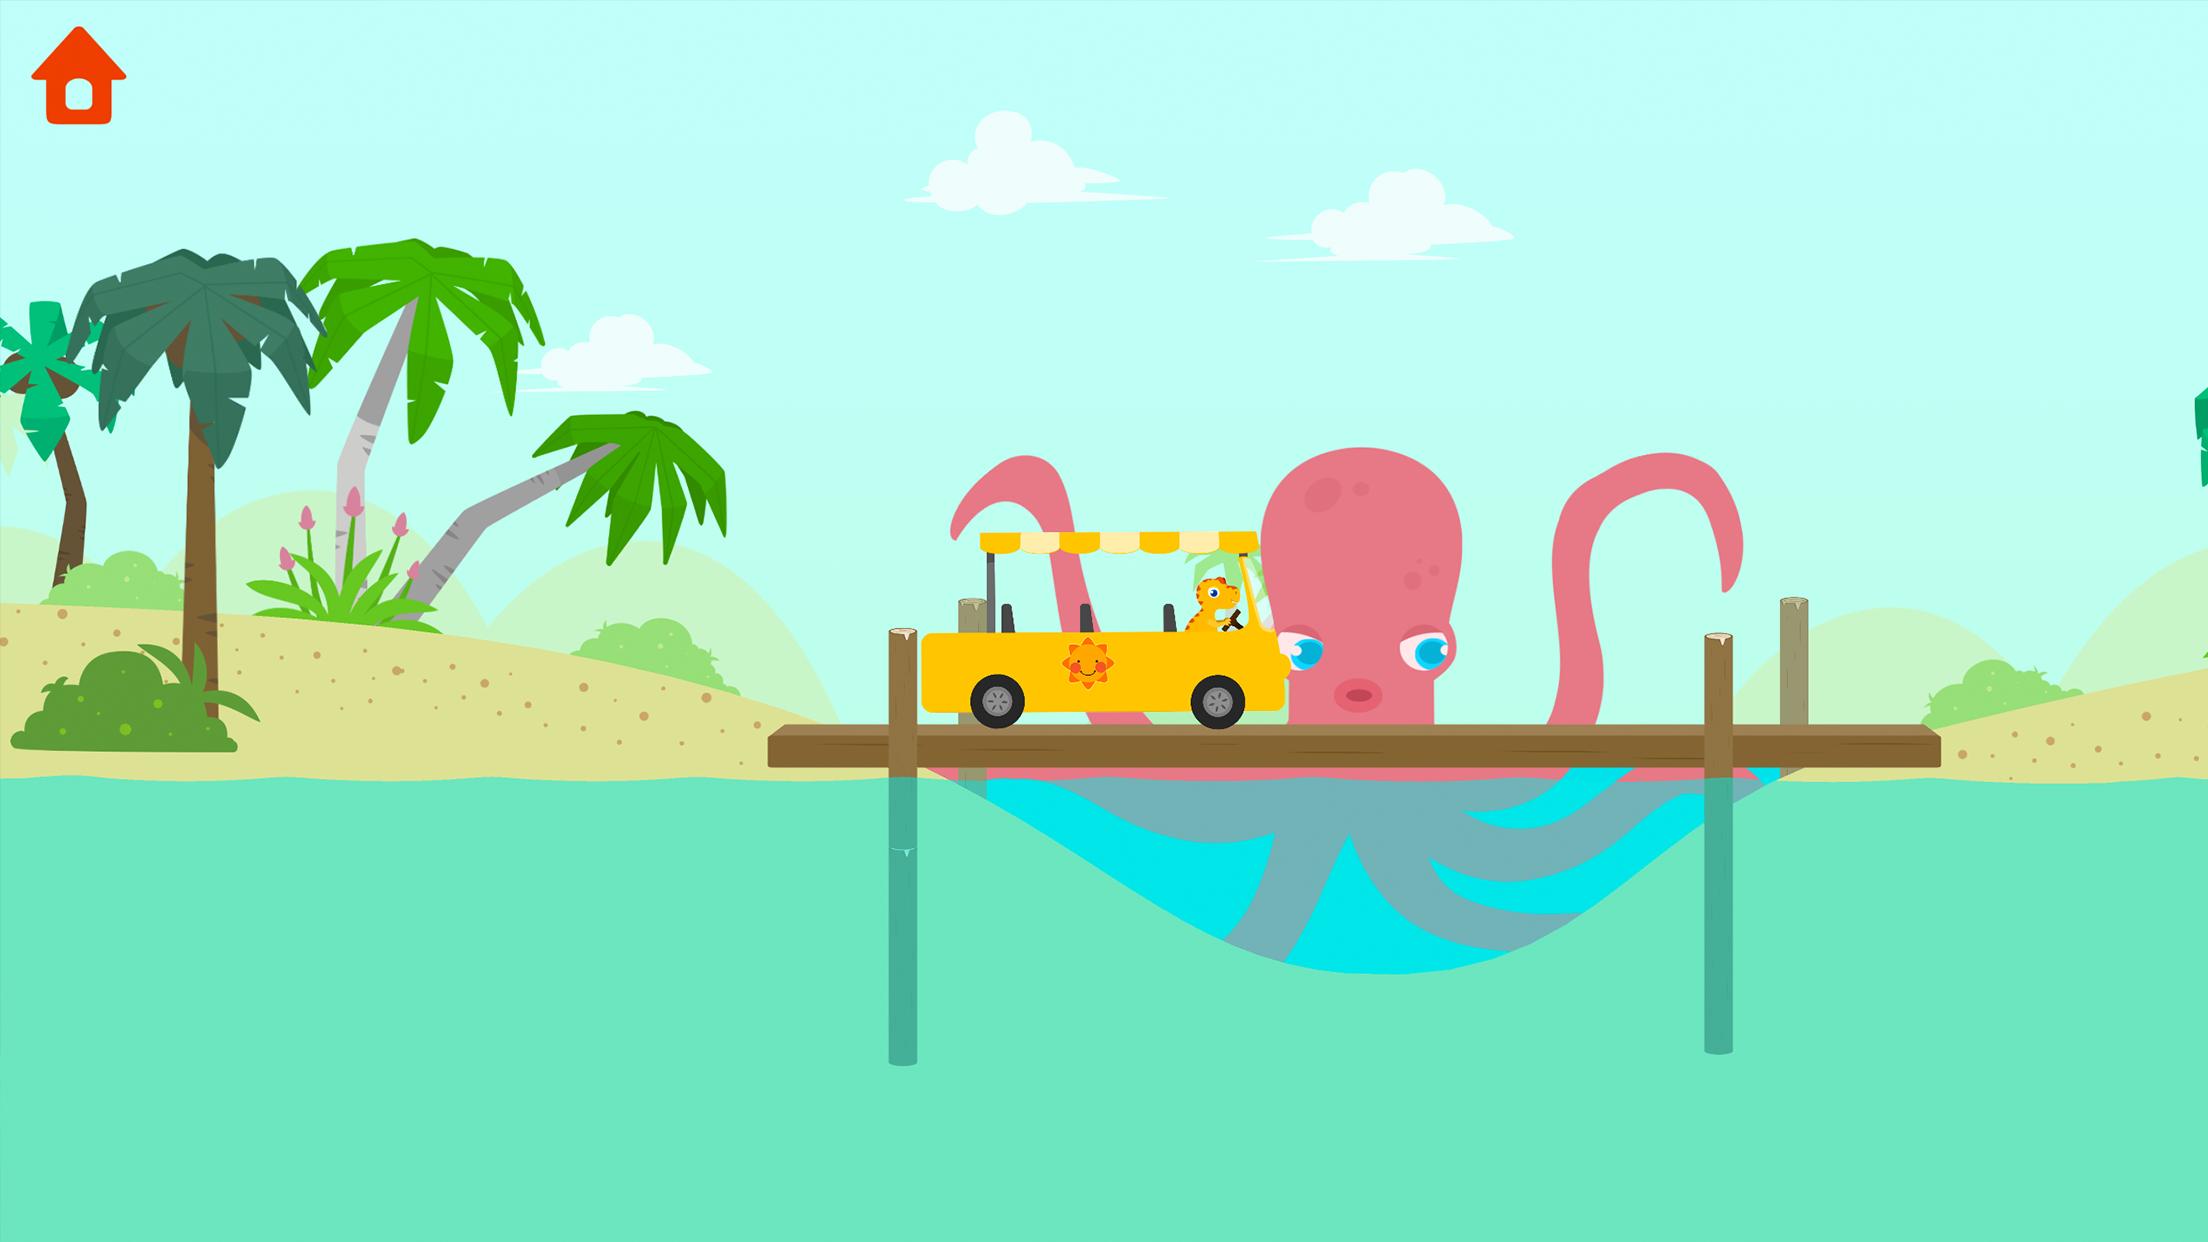 Dinosaur Bus - Create a Car! Games for kids 1.0.7 Screenshot 7